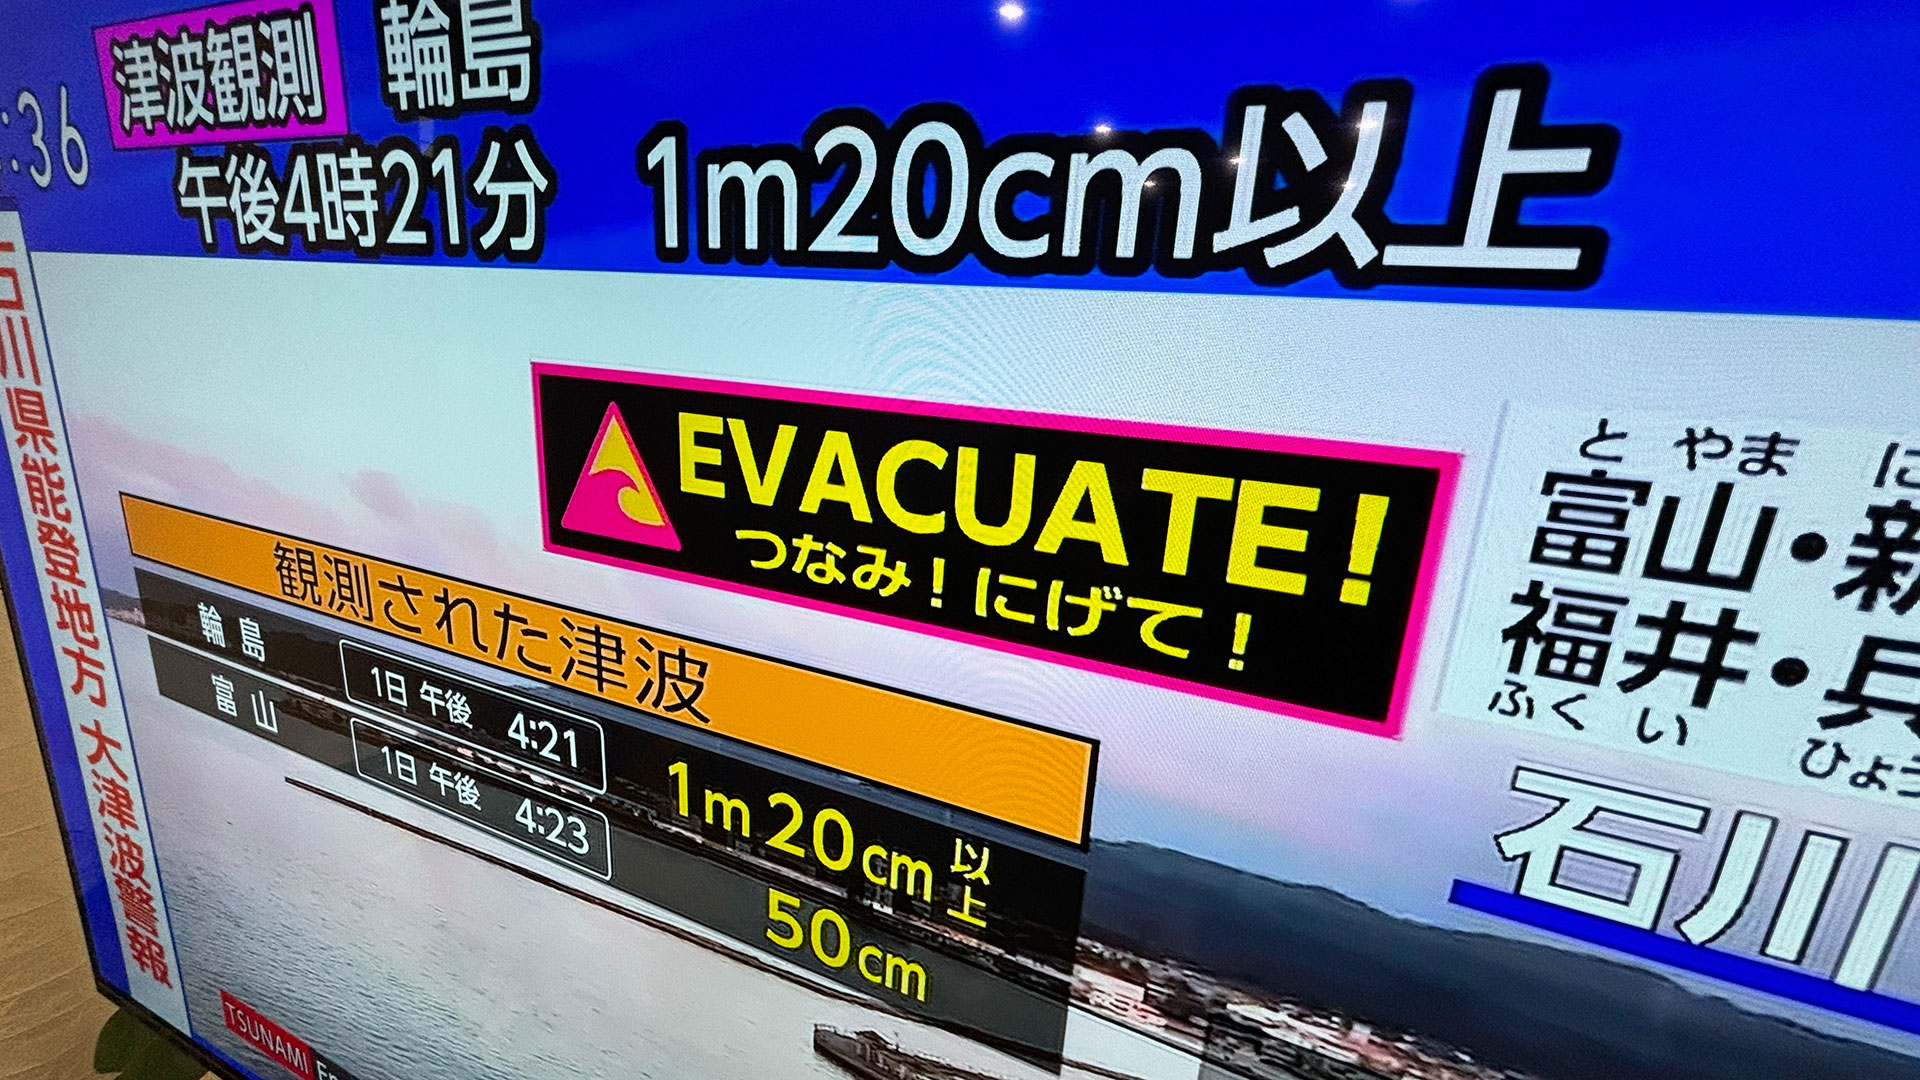 Ιαπωνία: Εικόνες μετά τον σεισμό 7,6 Ρίχτερ – Καταστροφές και εκκενώσεις περιοχών-11